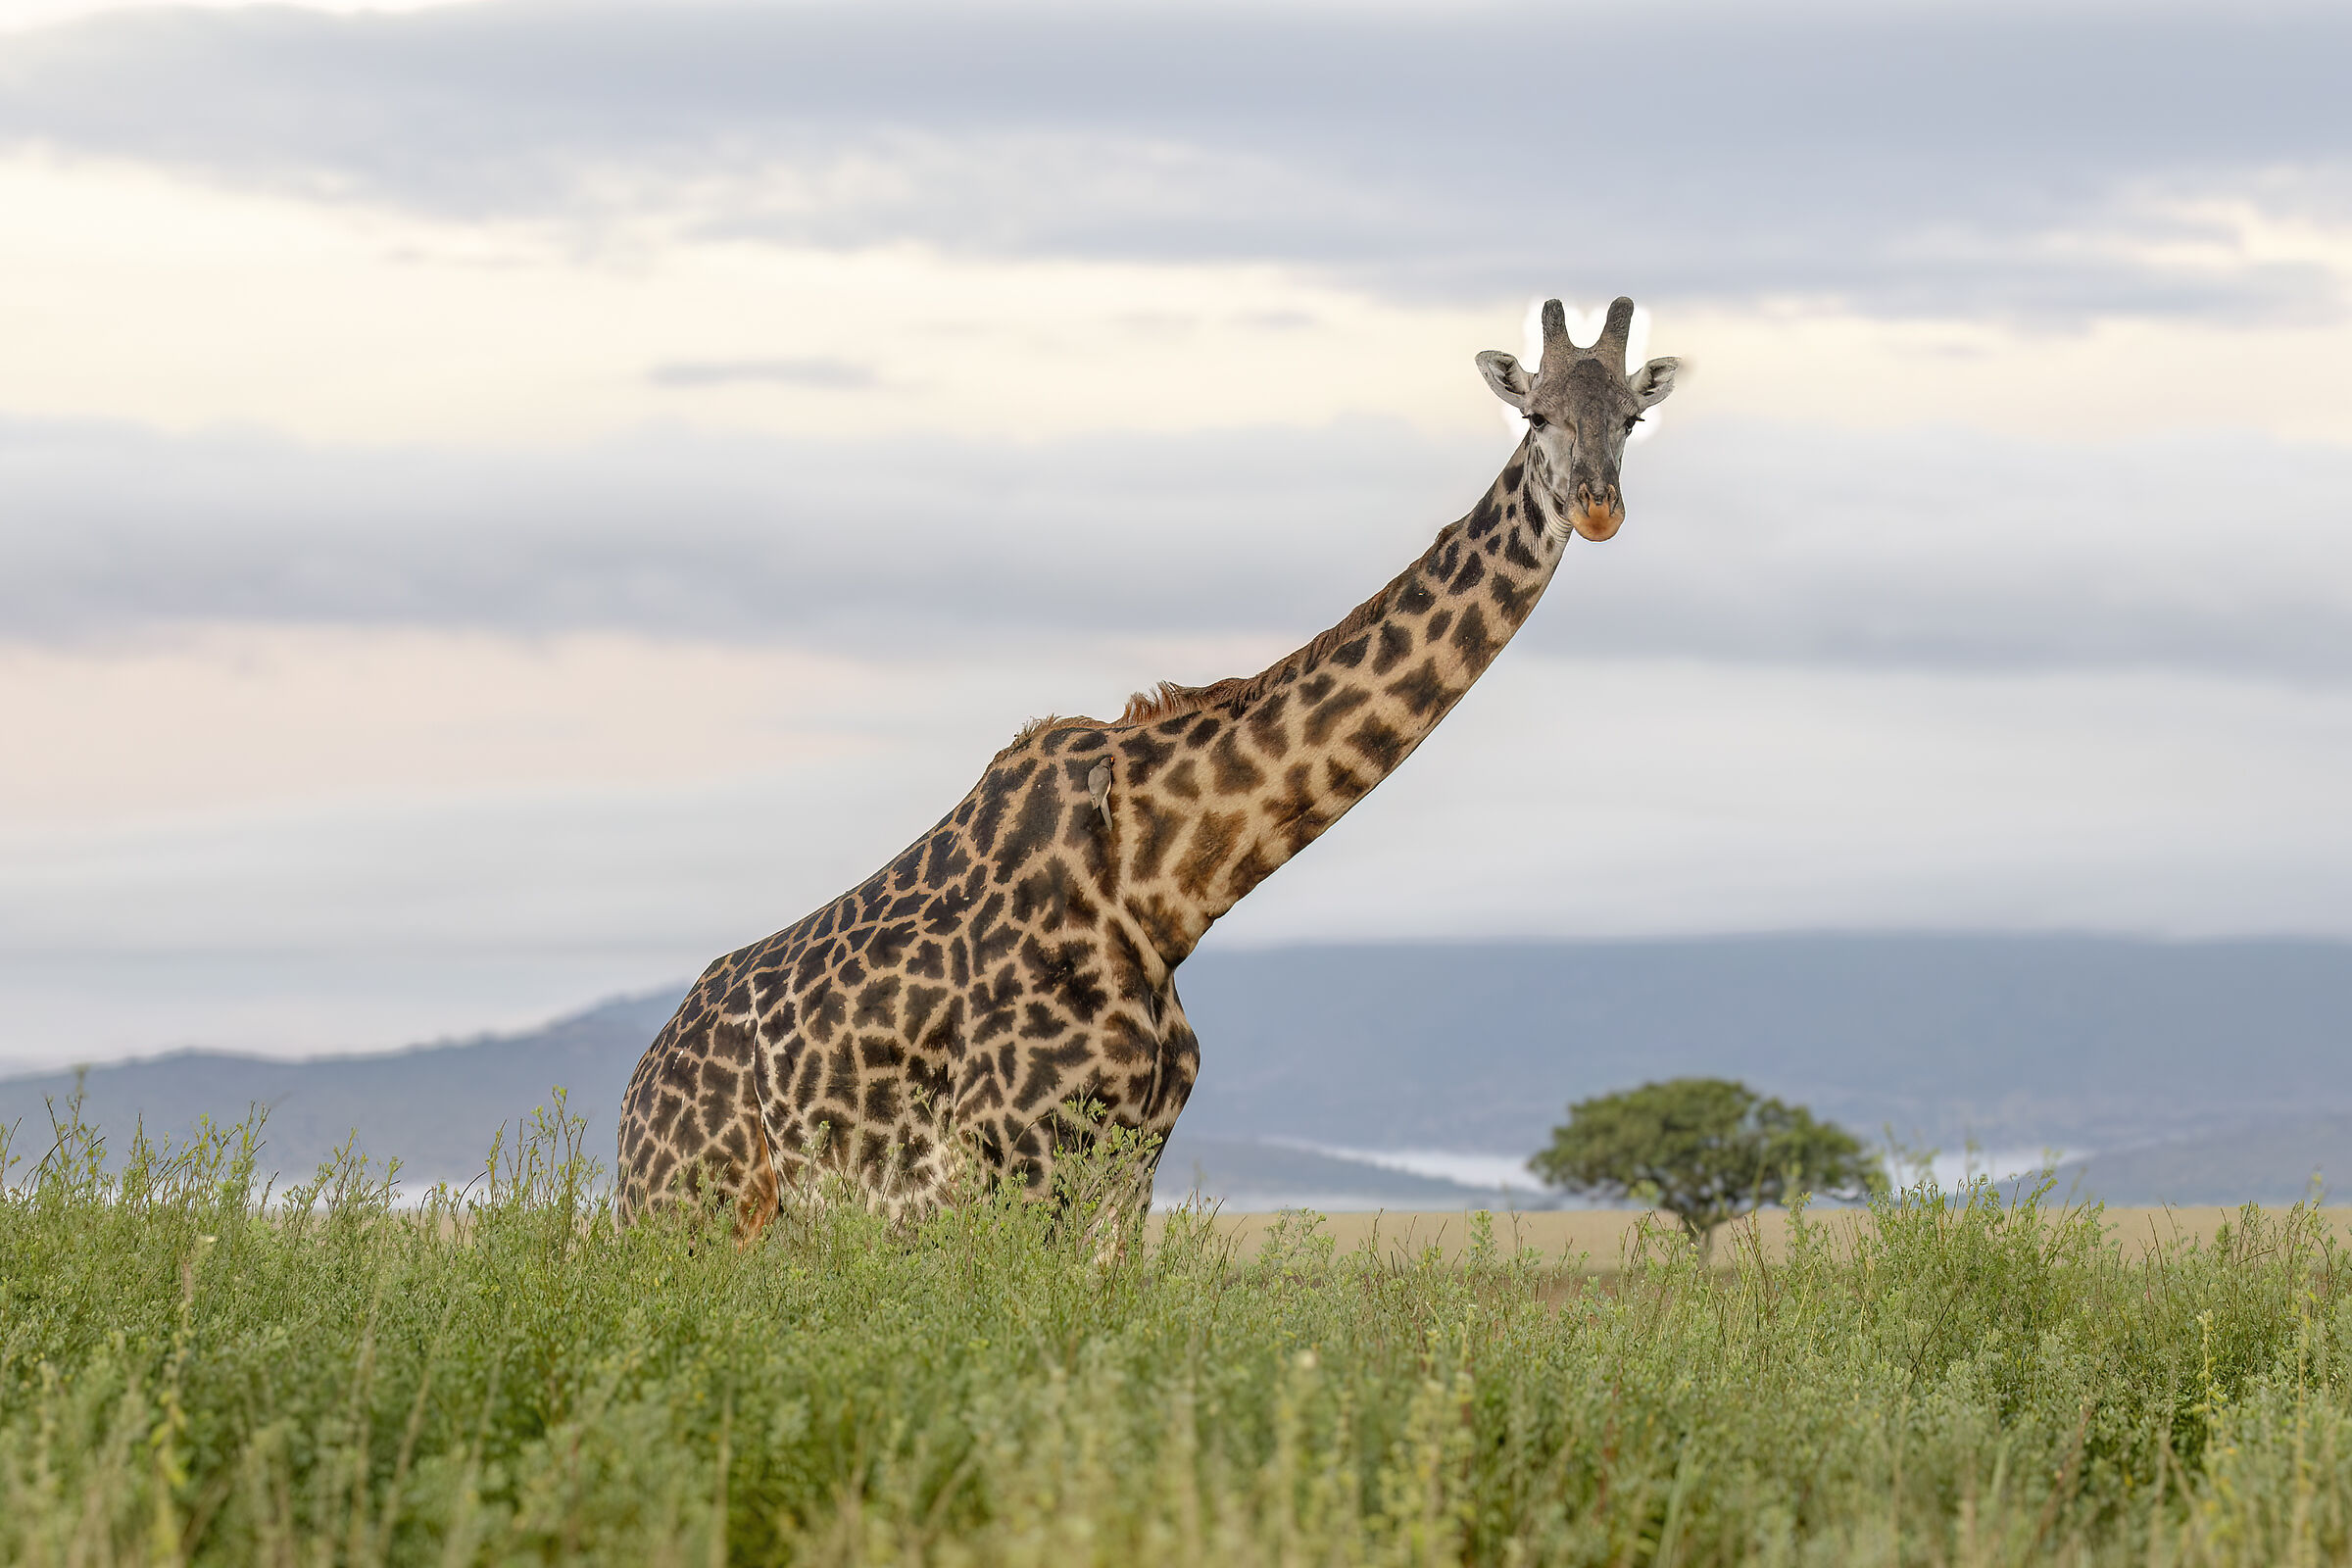 Giraffe - before sunrise on the Serengeti...